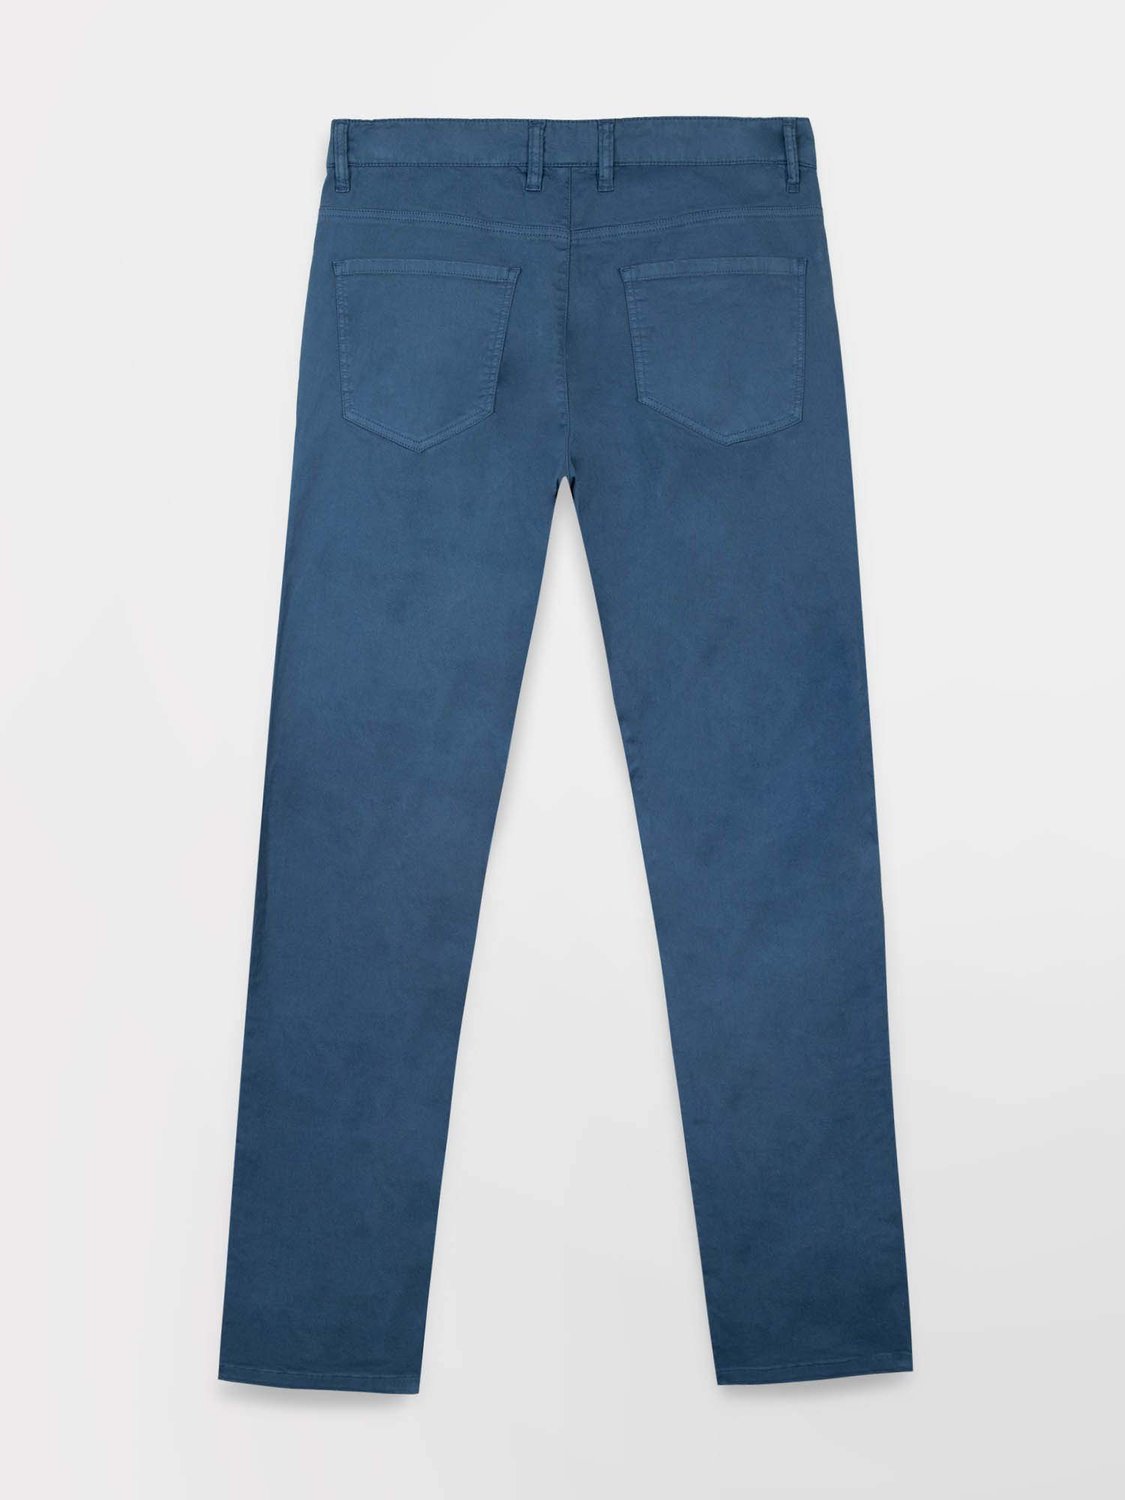 Pantalon Homme Coton Stretch Bleu